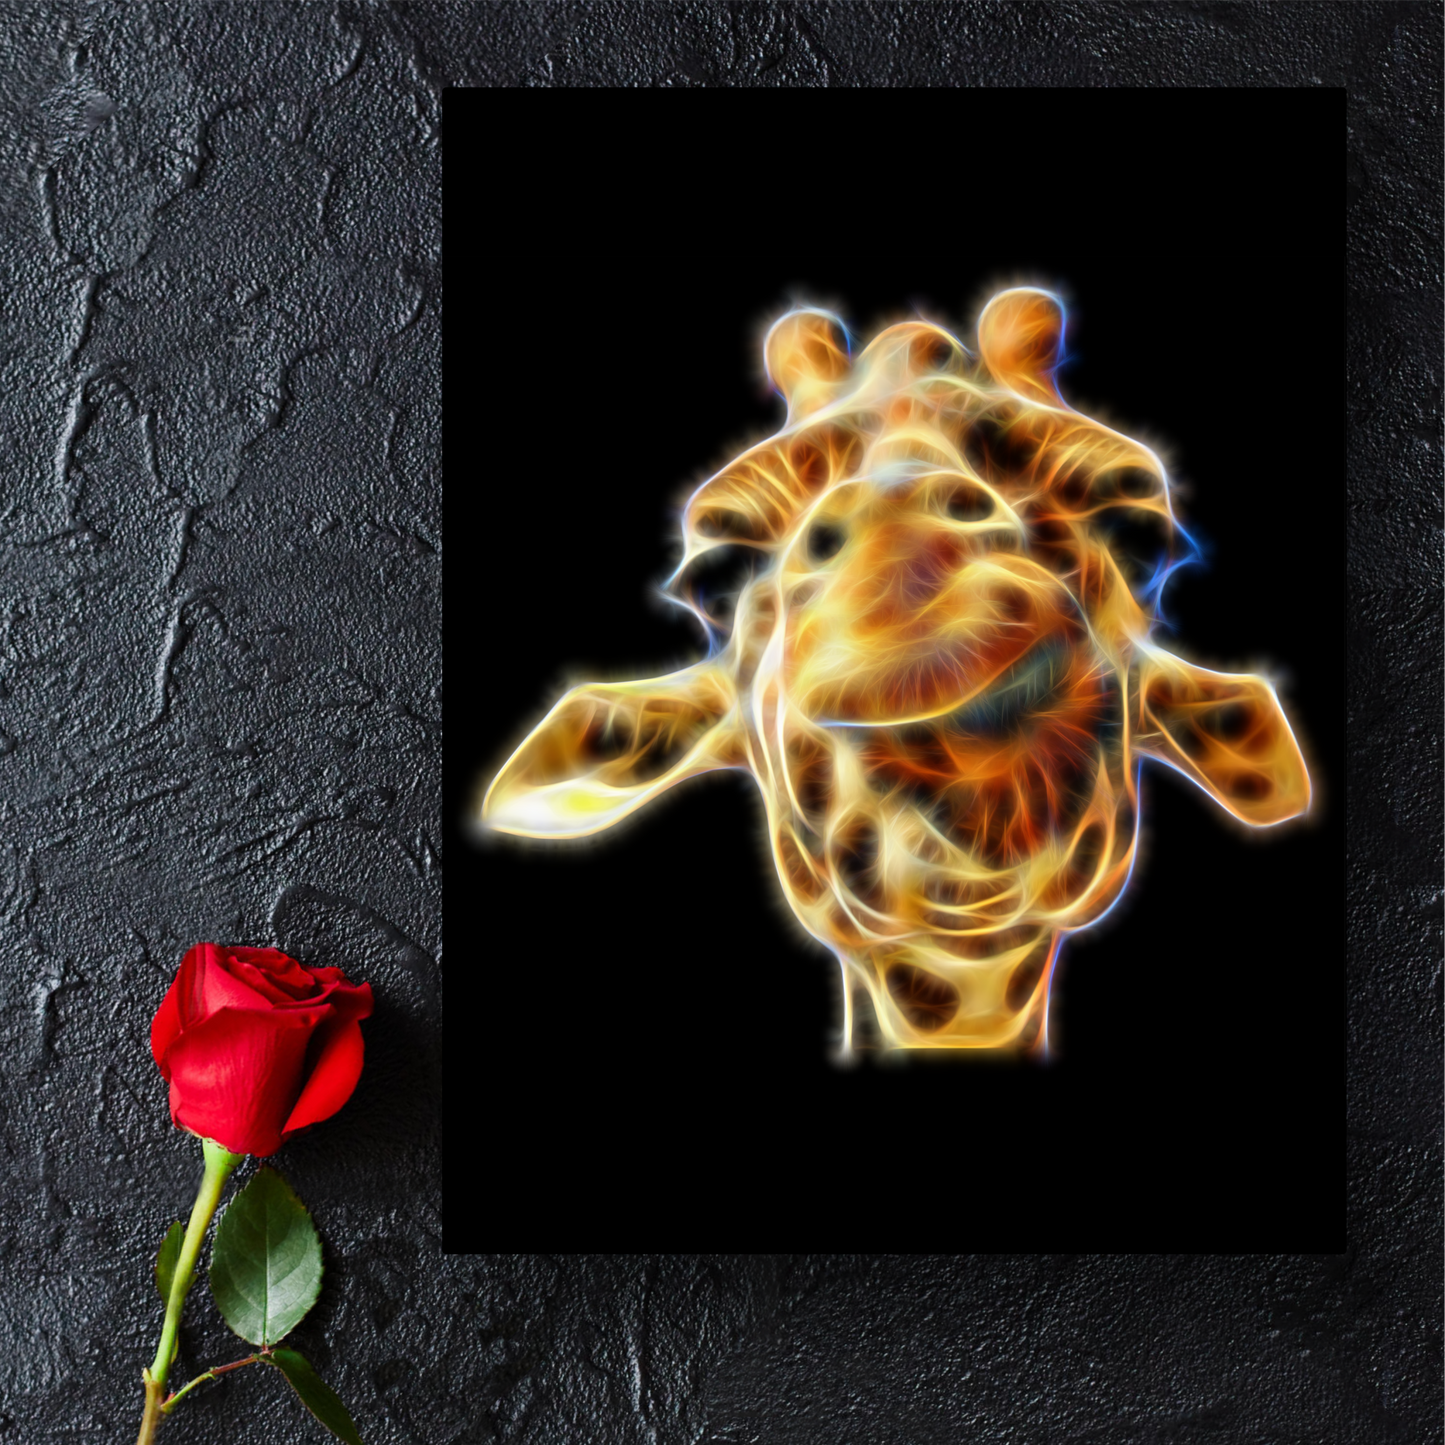 Giraffe Metal Wall Plaque Fractal Art Design